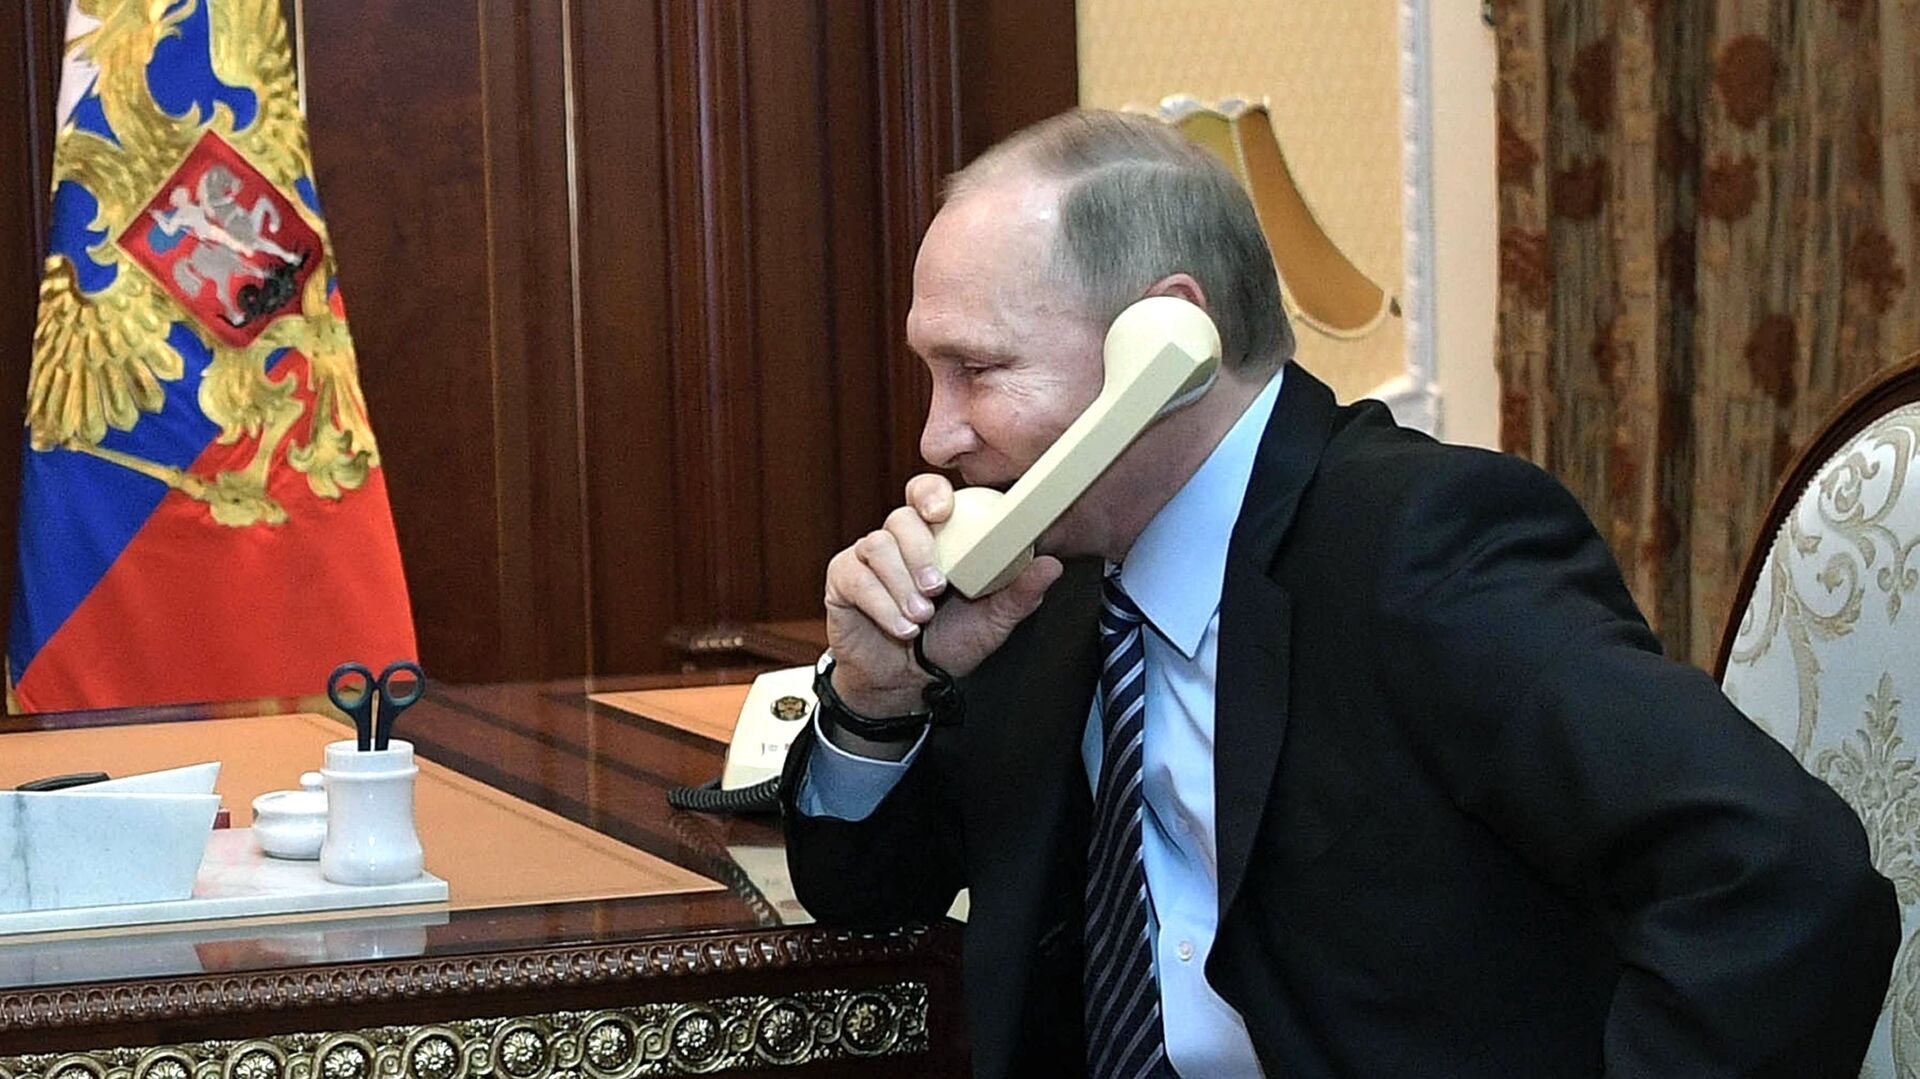 Vladímir Putin, presidente de Rusia, habla por teléfono (archivo) - Sputnik Mundo, 1920, 30.03.2021